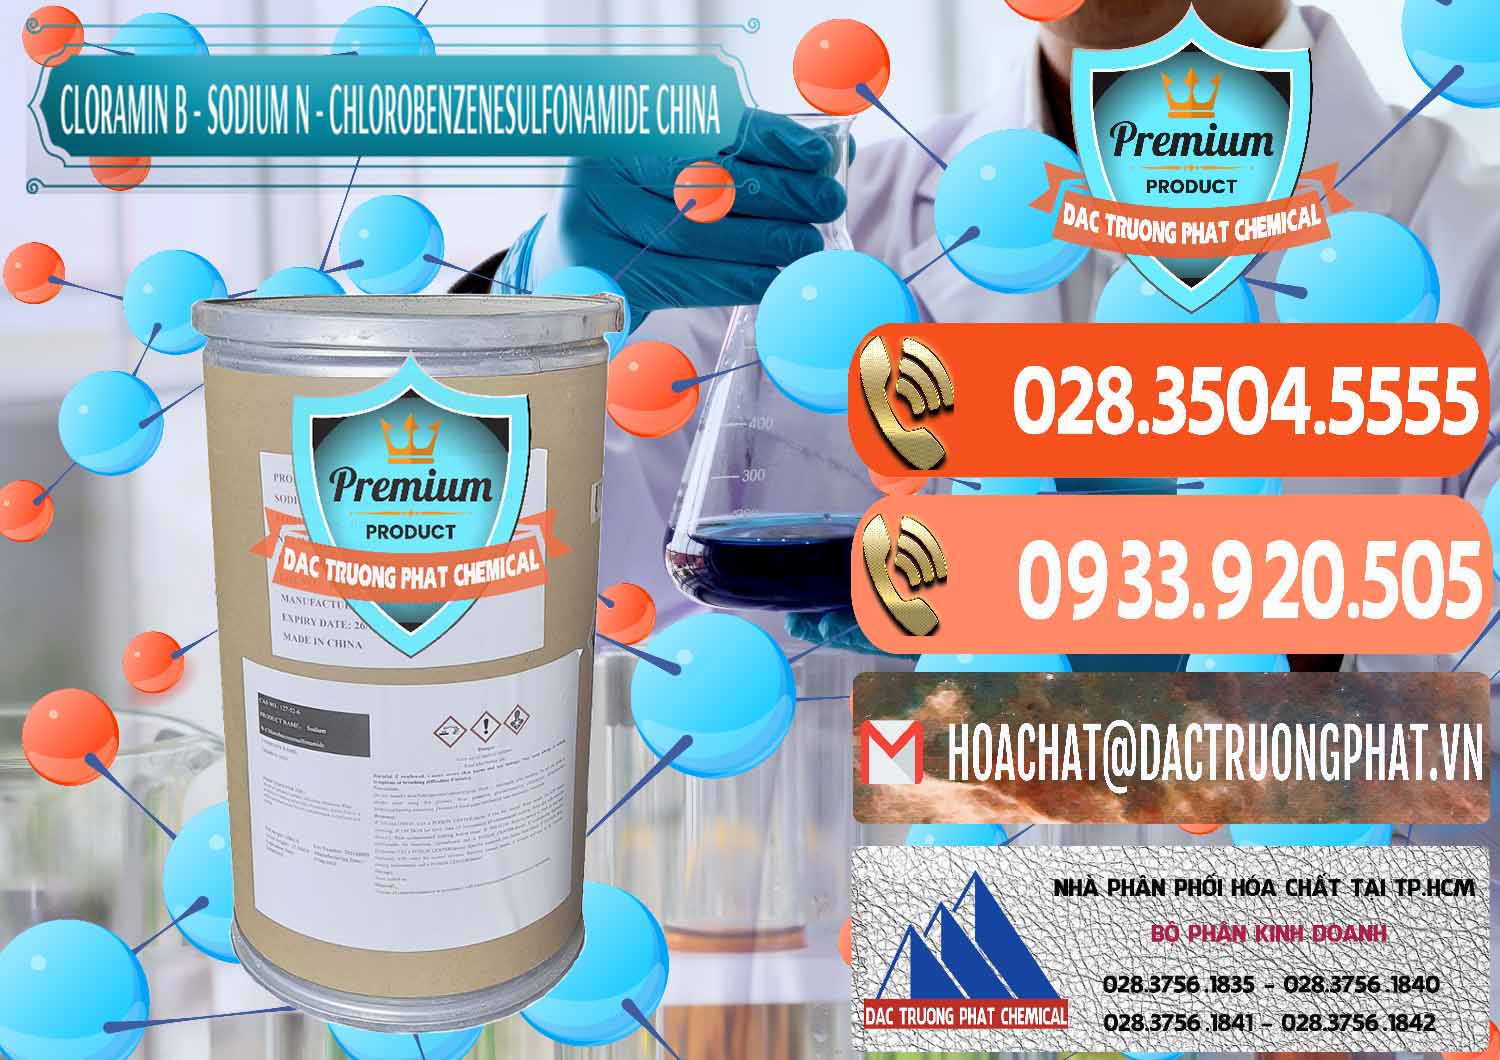 Đơn vị chuyên phân phối - bán Cloramin B Khử Trùng, Diệt Khuẩn Trung Quốc China - 0298 - Cty chuyên bán _ cung cấp hóa chất tại TP.HCM - hoachatmientay.com